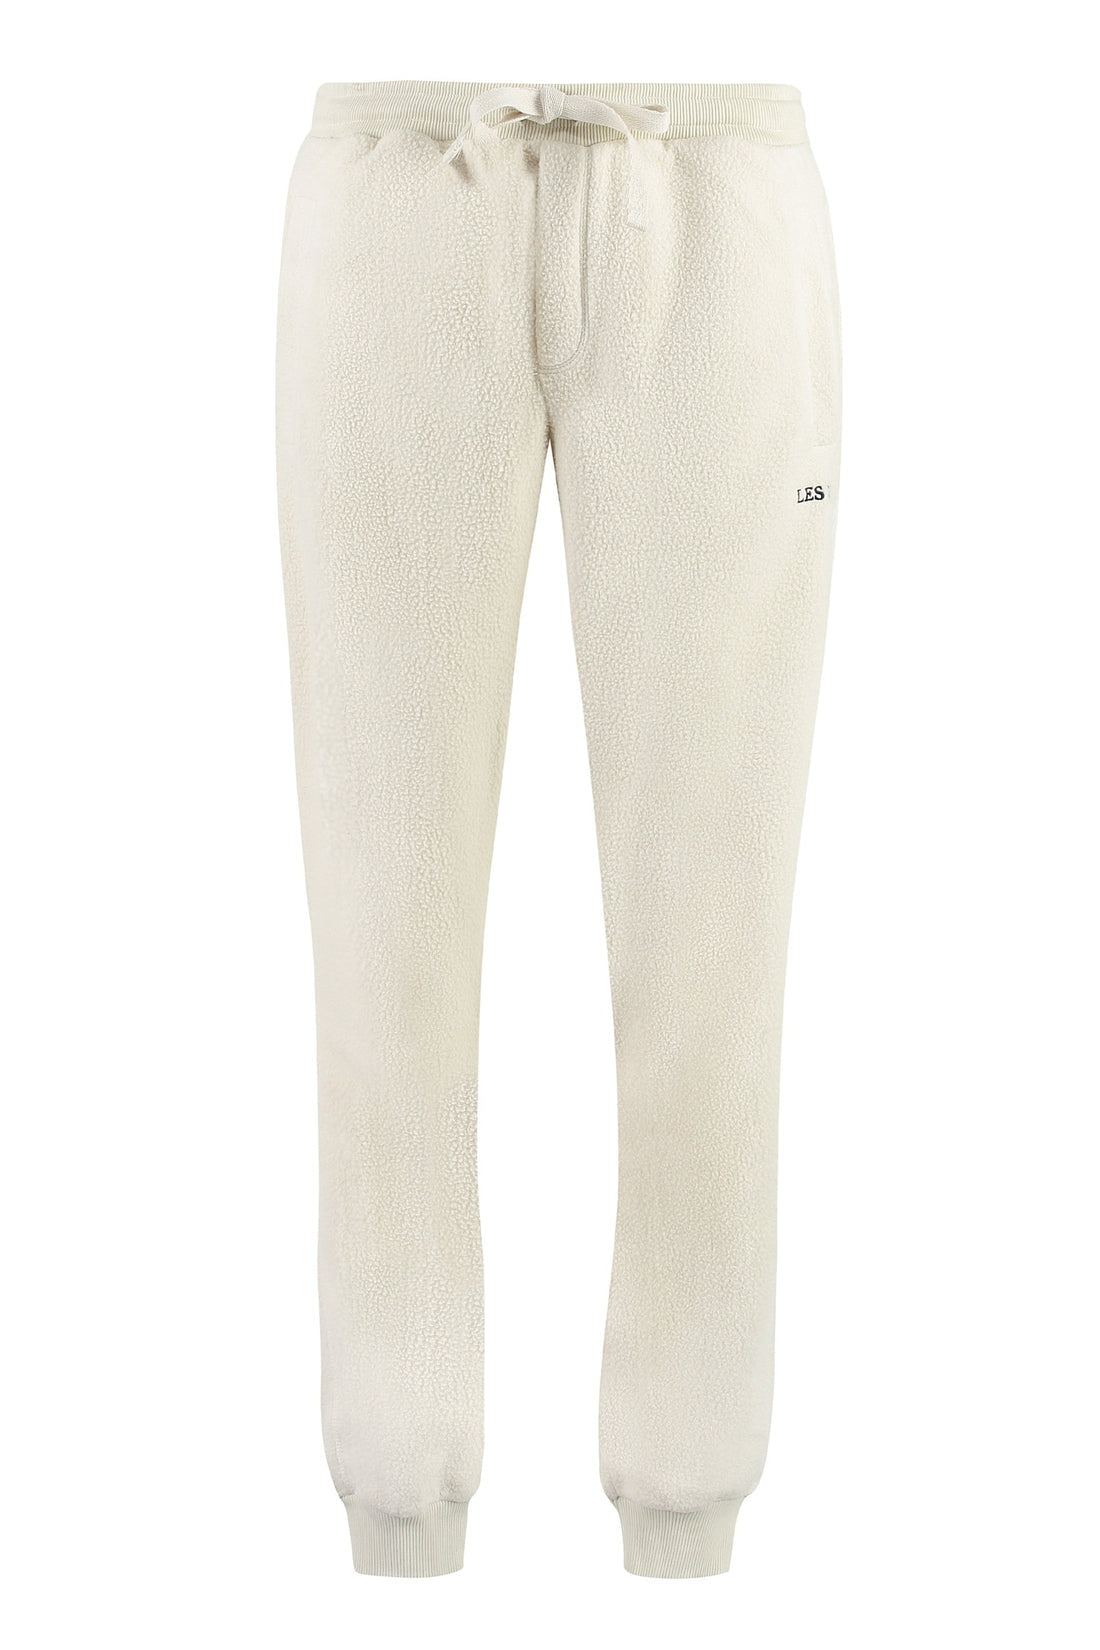 Les Deux-OUTLET-SALE-Duncan fleece trousers-ARCHIVIST